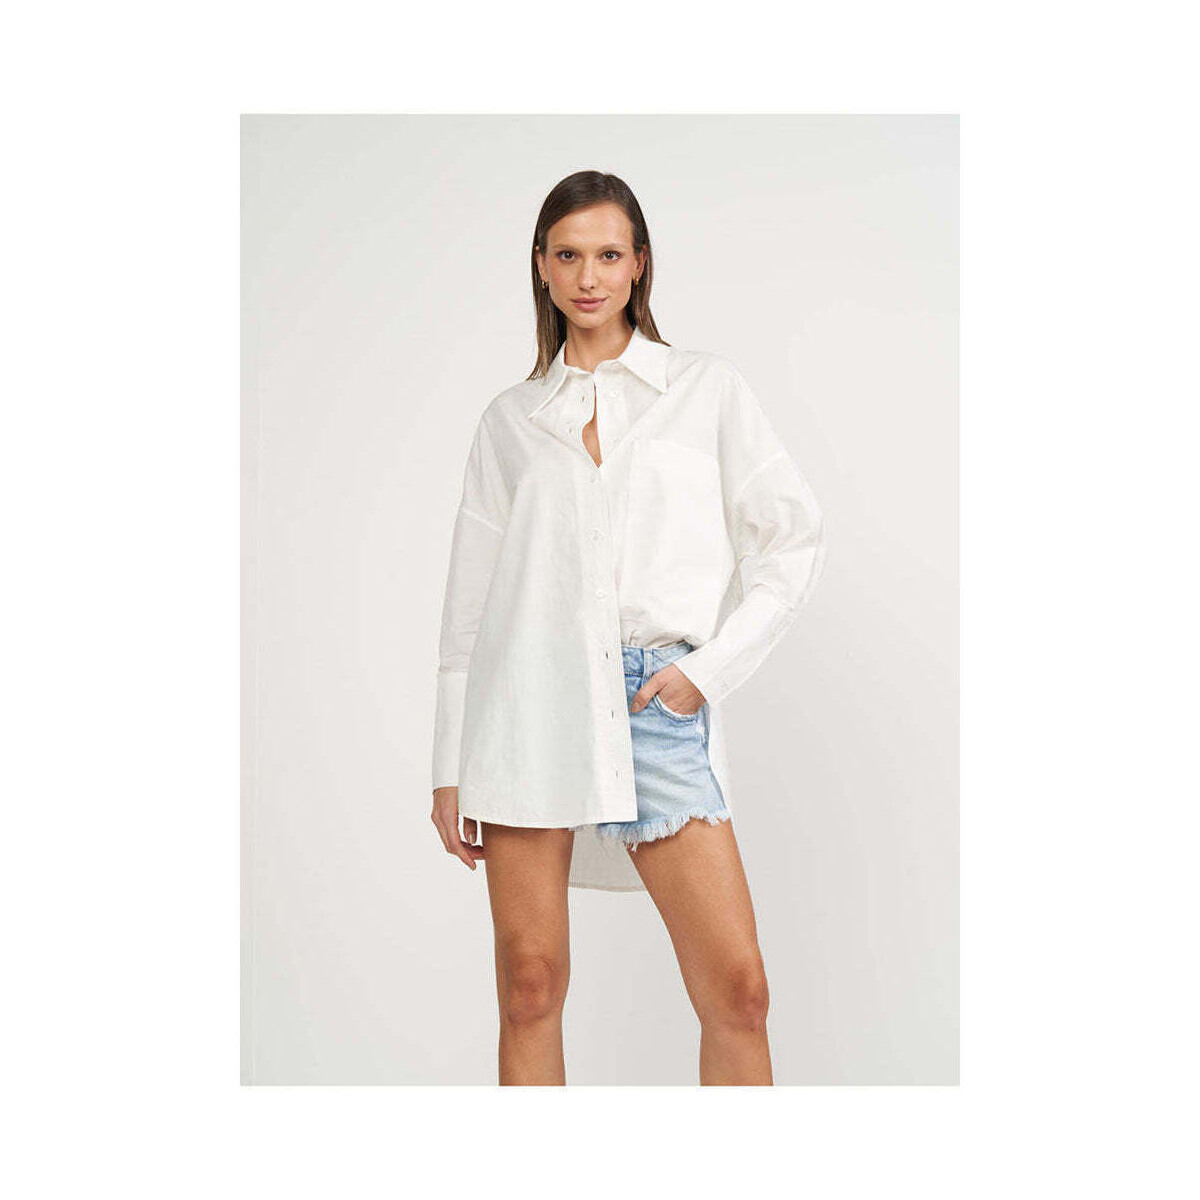 Textil Mulher camisas Colcci 0300102670-2-31 Branco